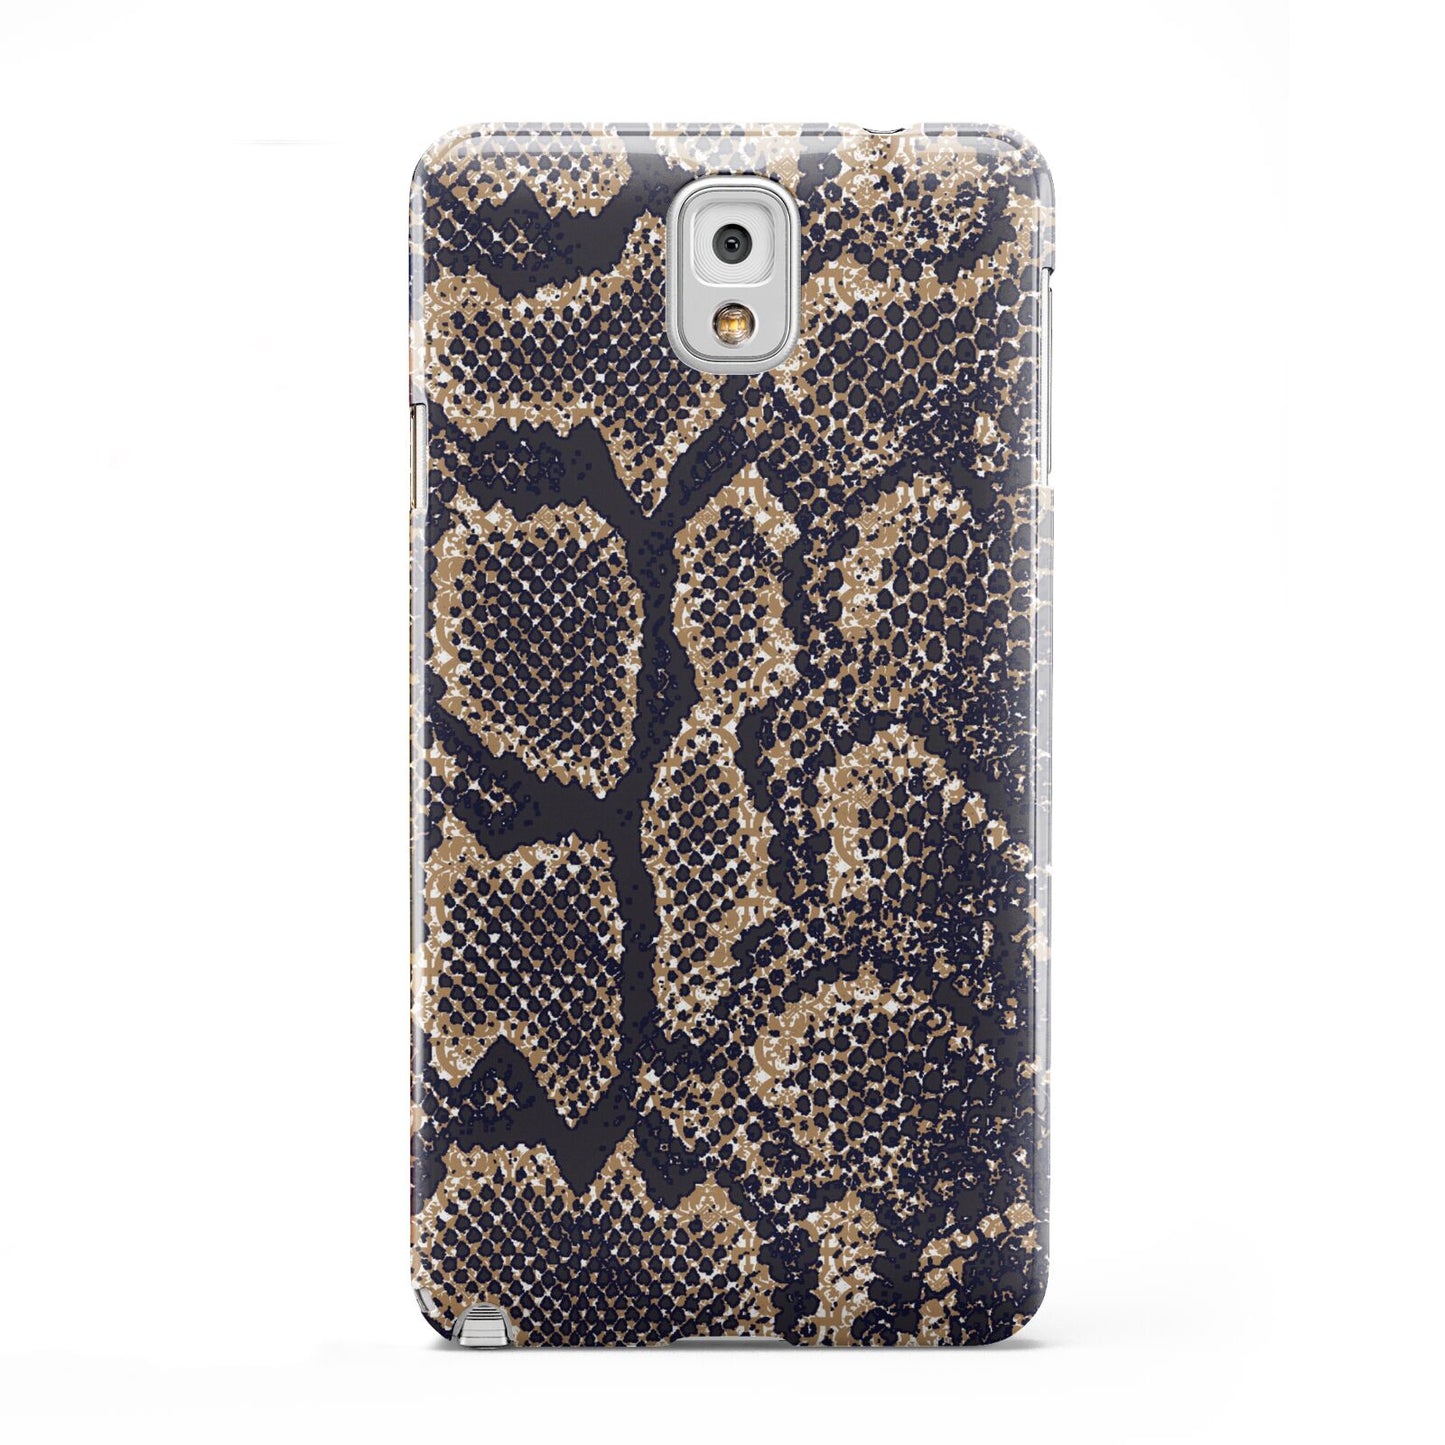 Brown Snakeskin Samsung Galaxy Note 3 Case